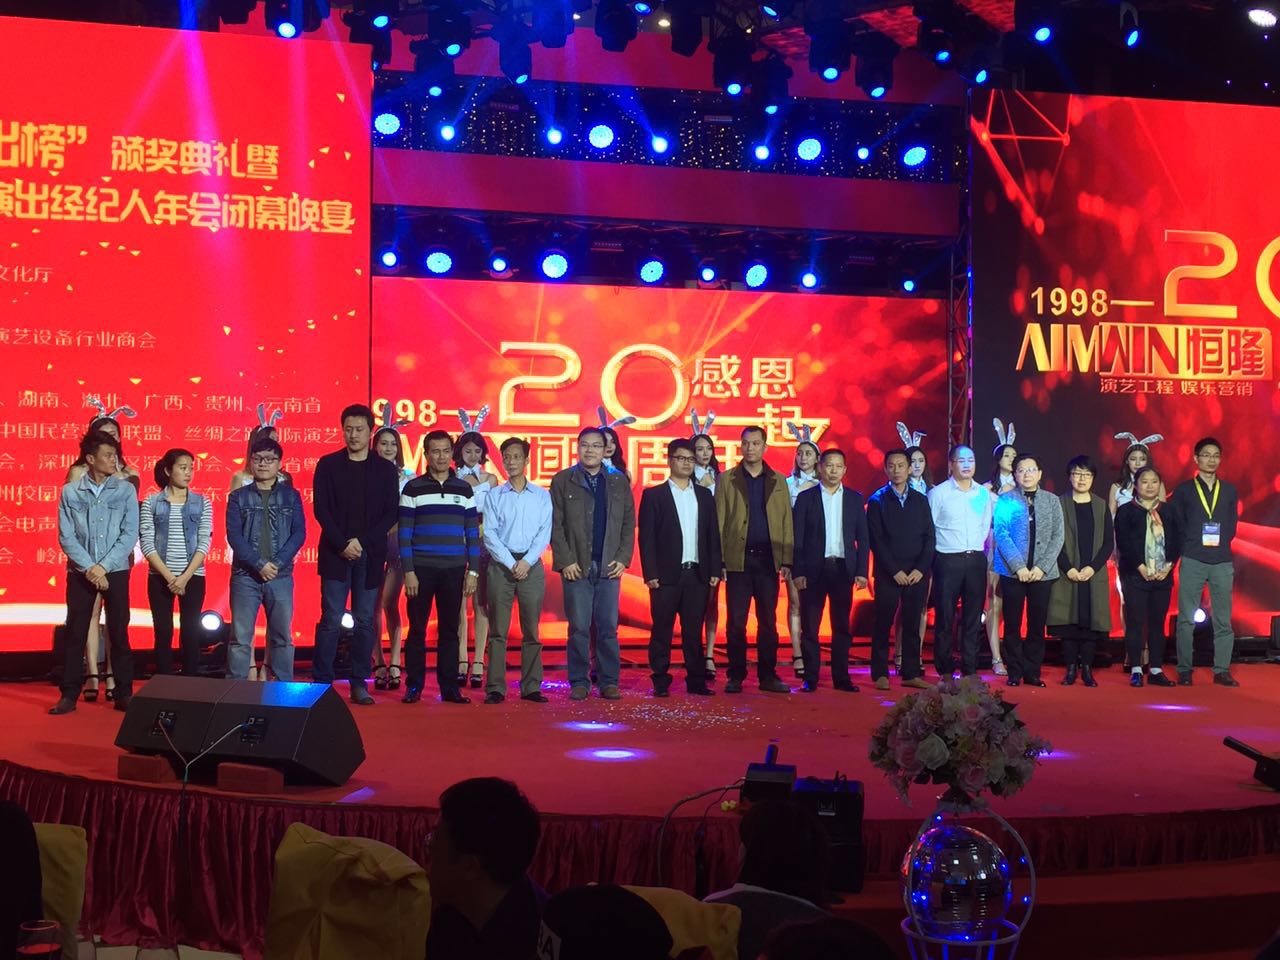 热烈祝贺广州嘉晟总经理孙汉民先生及项目经理赵宏晖先生荣获2016年度“演出榜”优秀个人奖。